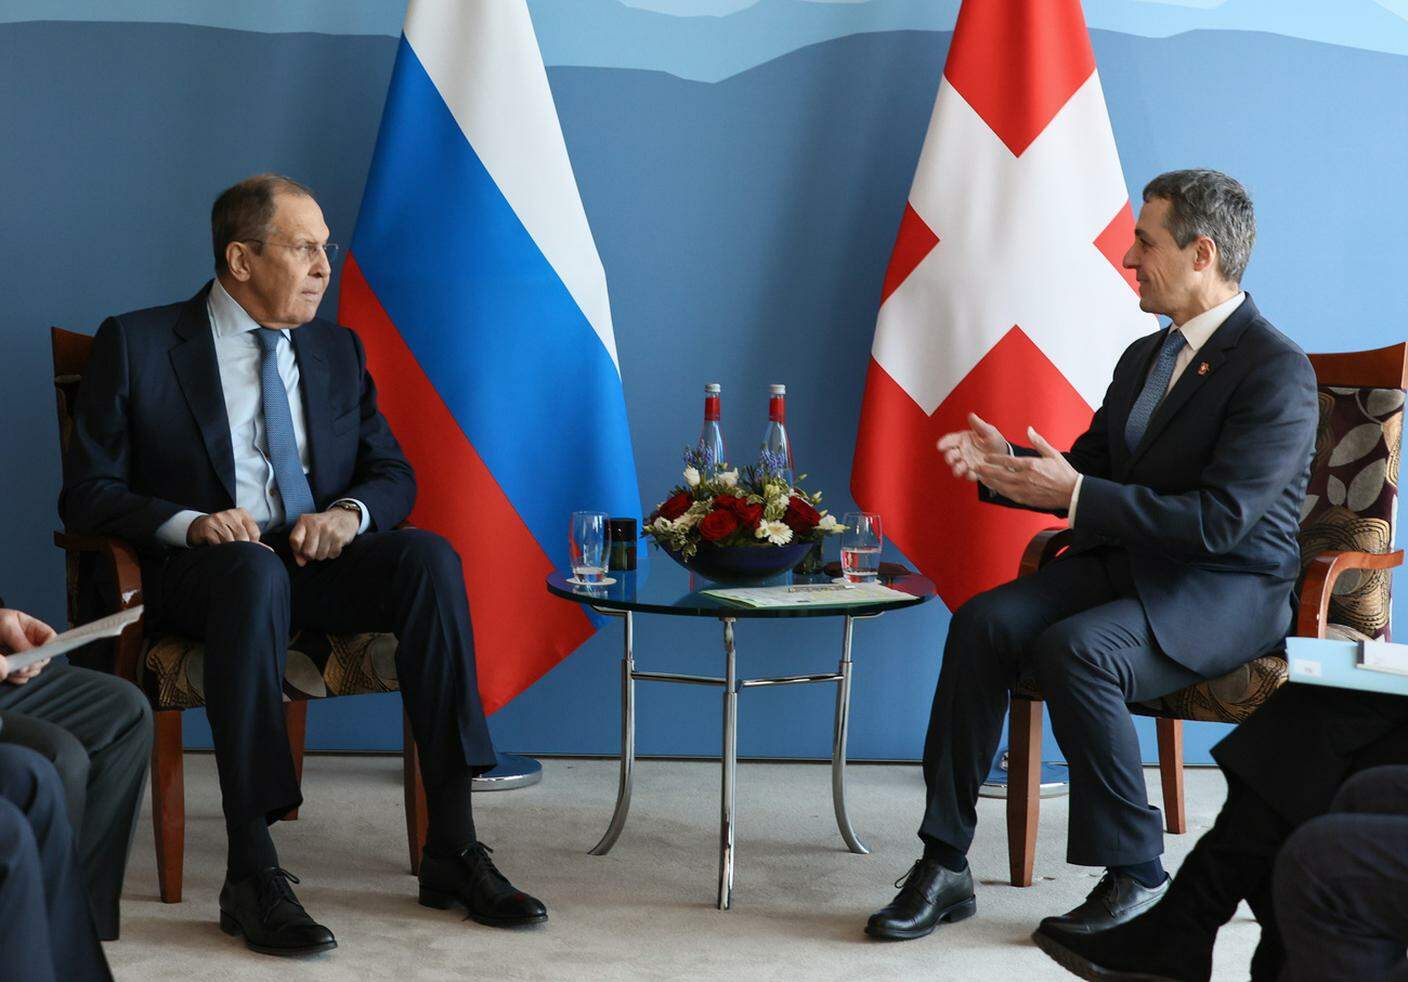 Cassis e il capo della diplomazia russa durante il loro incontro a gennaio a Ginevra. Oggi al telefono hanno discusso essenzialmente della crisi umanitaria e delle iniziative diplomatiche in corso